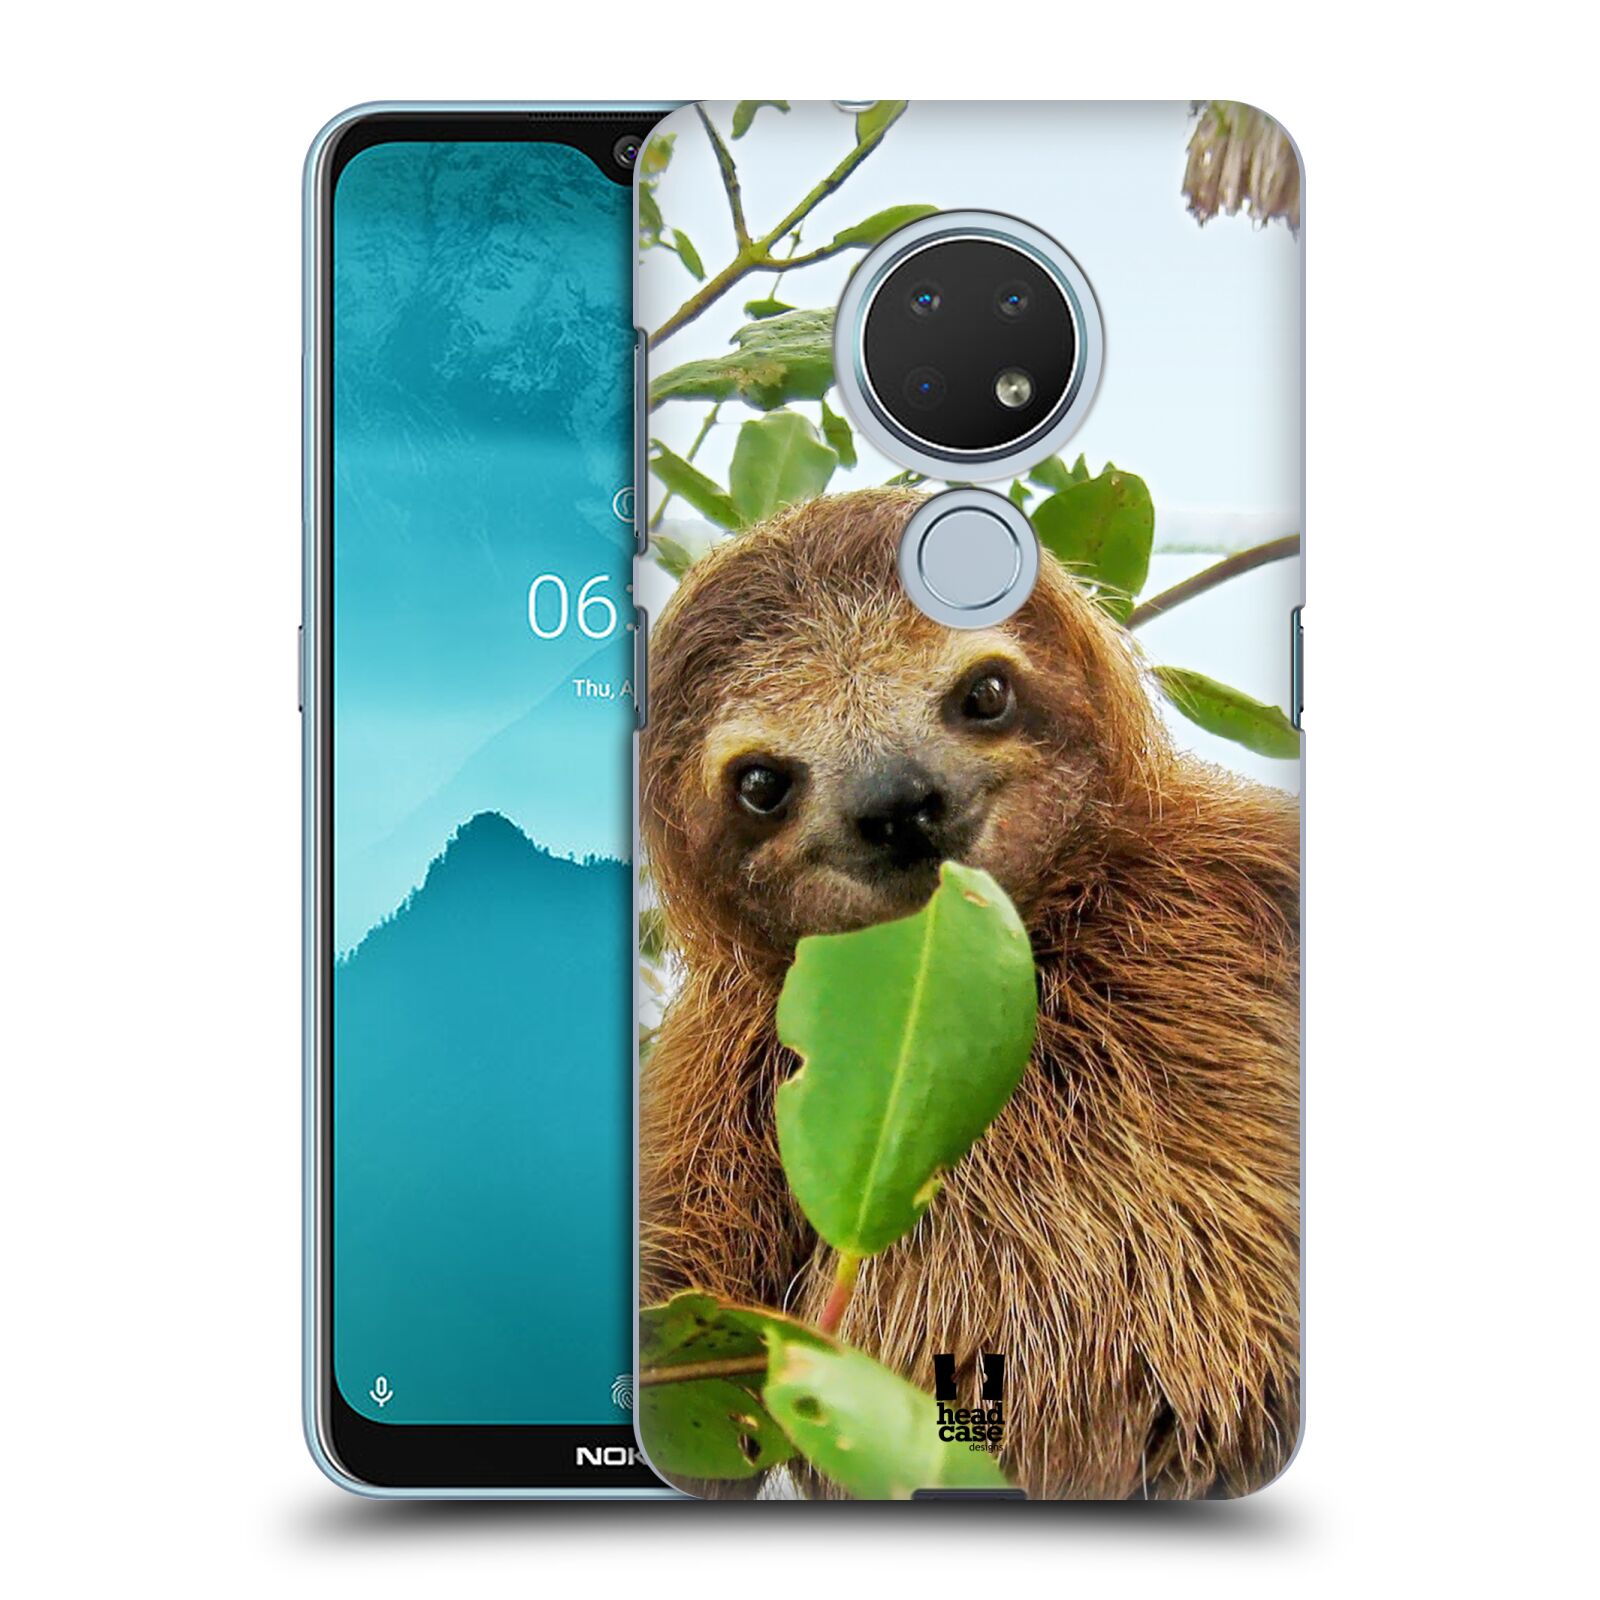 Pouzdro na mobil Nokia 6.2 - HEAD CASE - vzor slavná zvířata foto lenochod